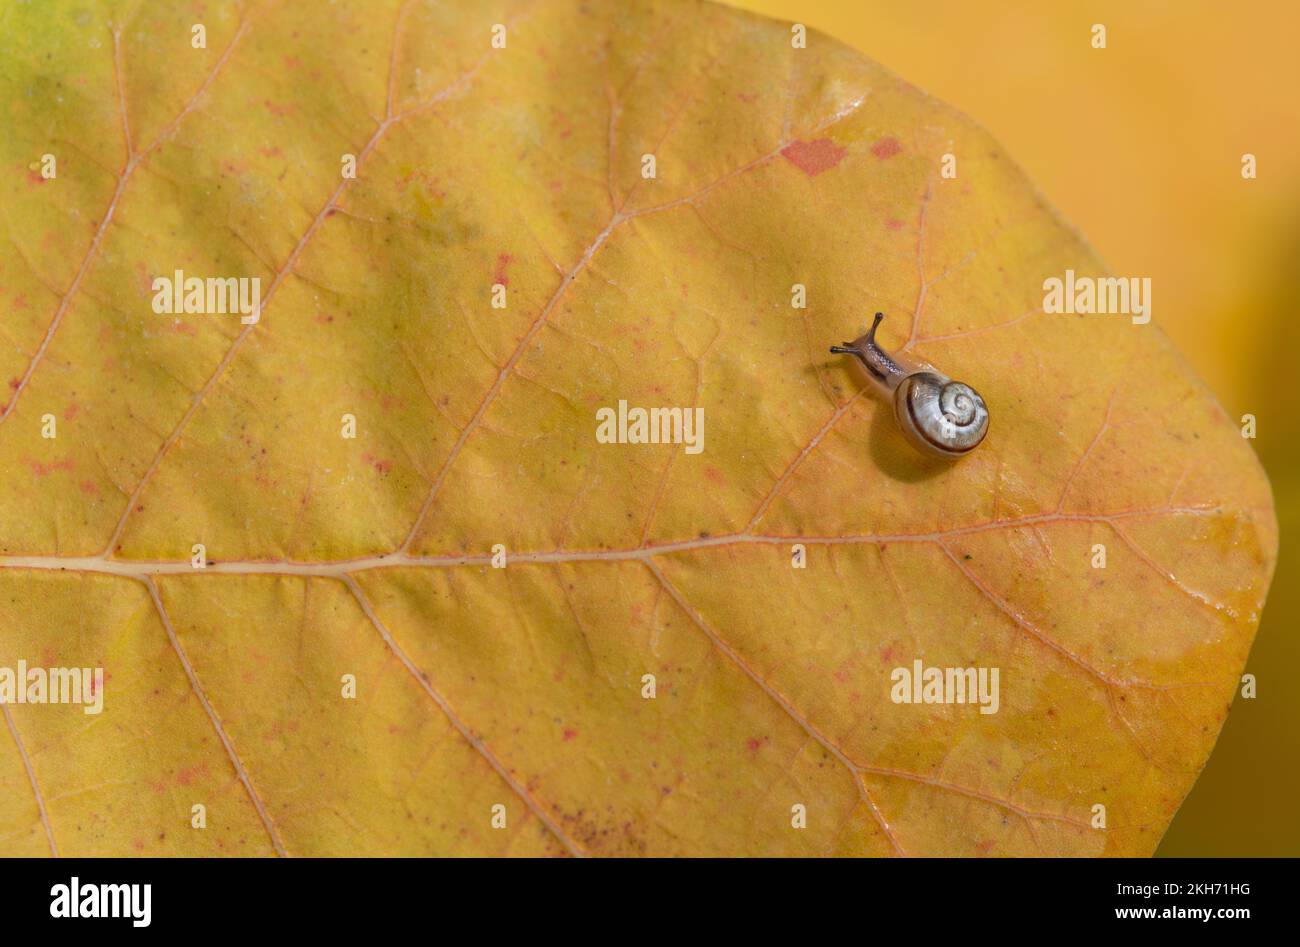 Eine kleine und junge Schnecke kriecht im Herbst über ein gelbes Blatt. Man kann die Schneckenschale sehen. Es ist Platz für Text vorhanden Stockfoto